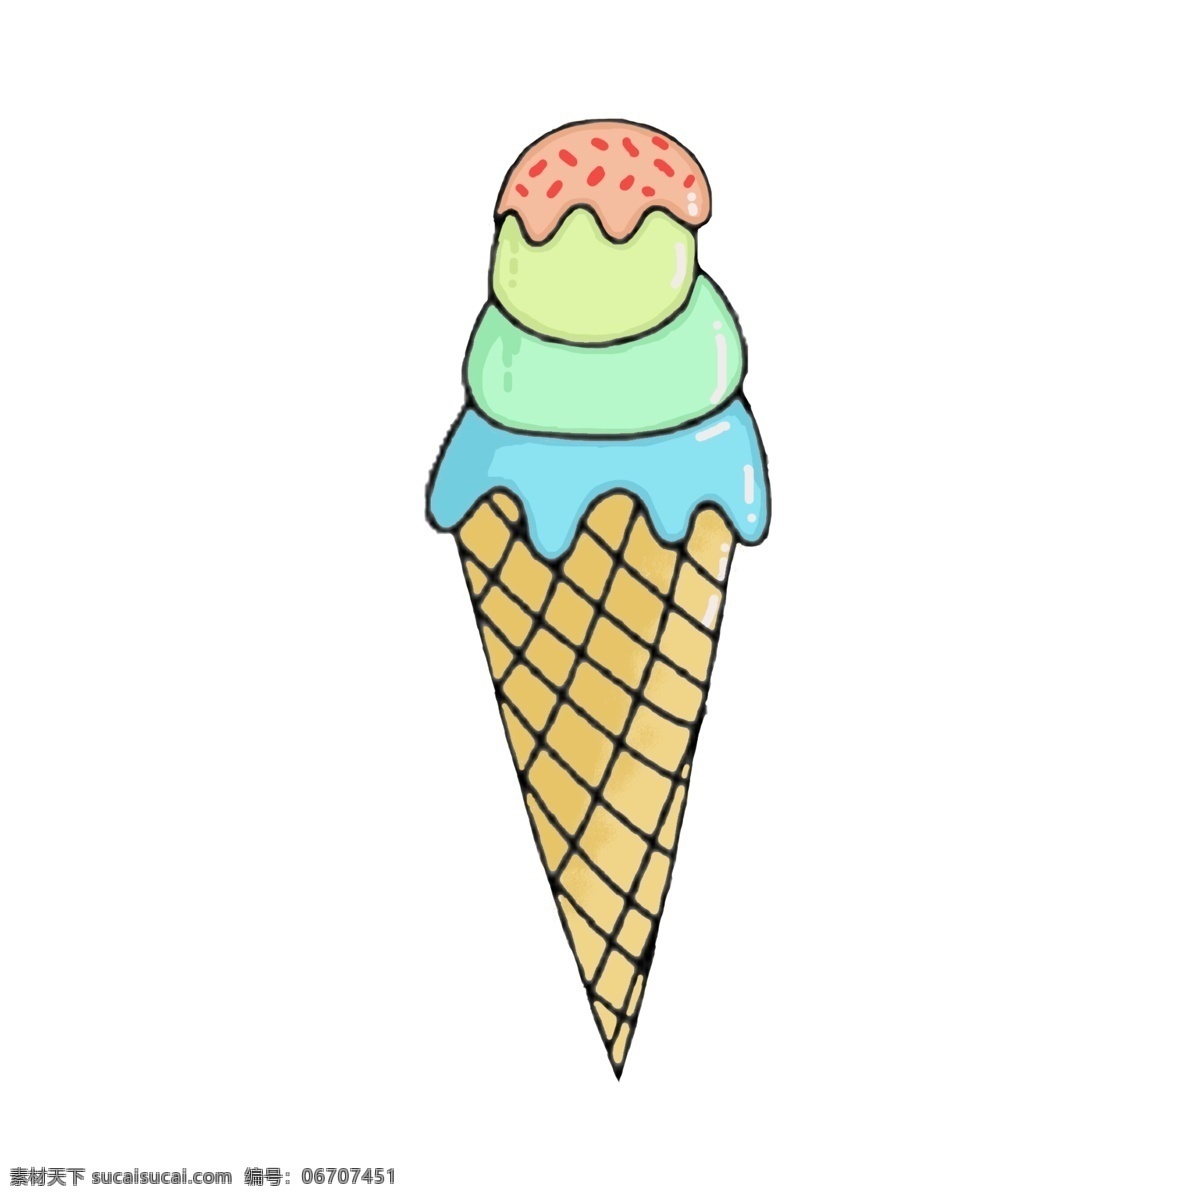 夏日 冰淇淋 手绘 卡通 装饰 卡通儿童 儿童节装饰 涂鸦 清爽图形 图标 平面 通用 可爱 装饰背景